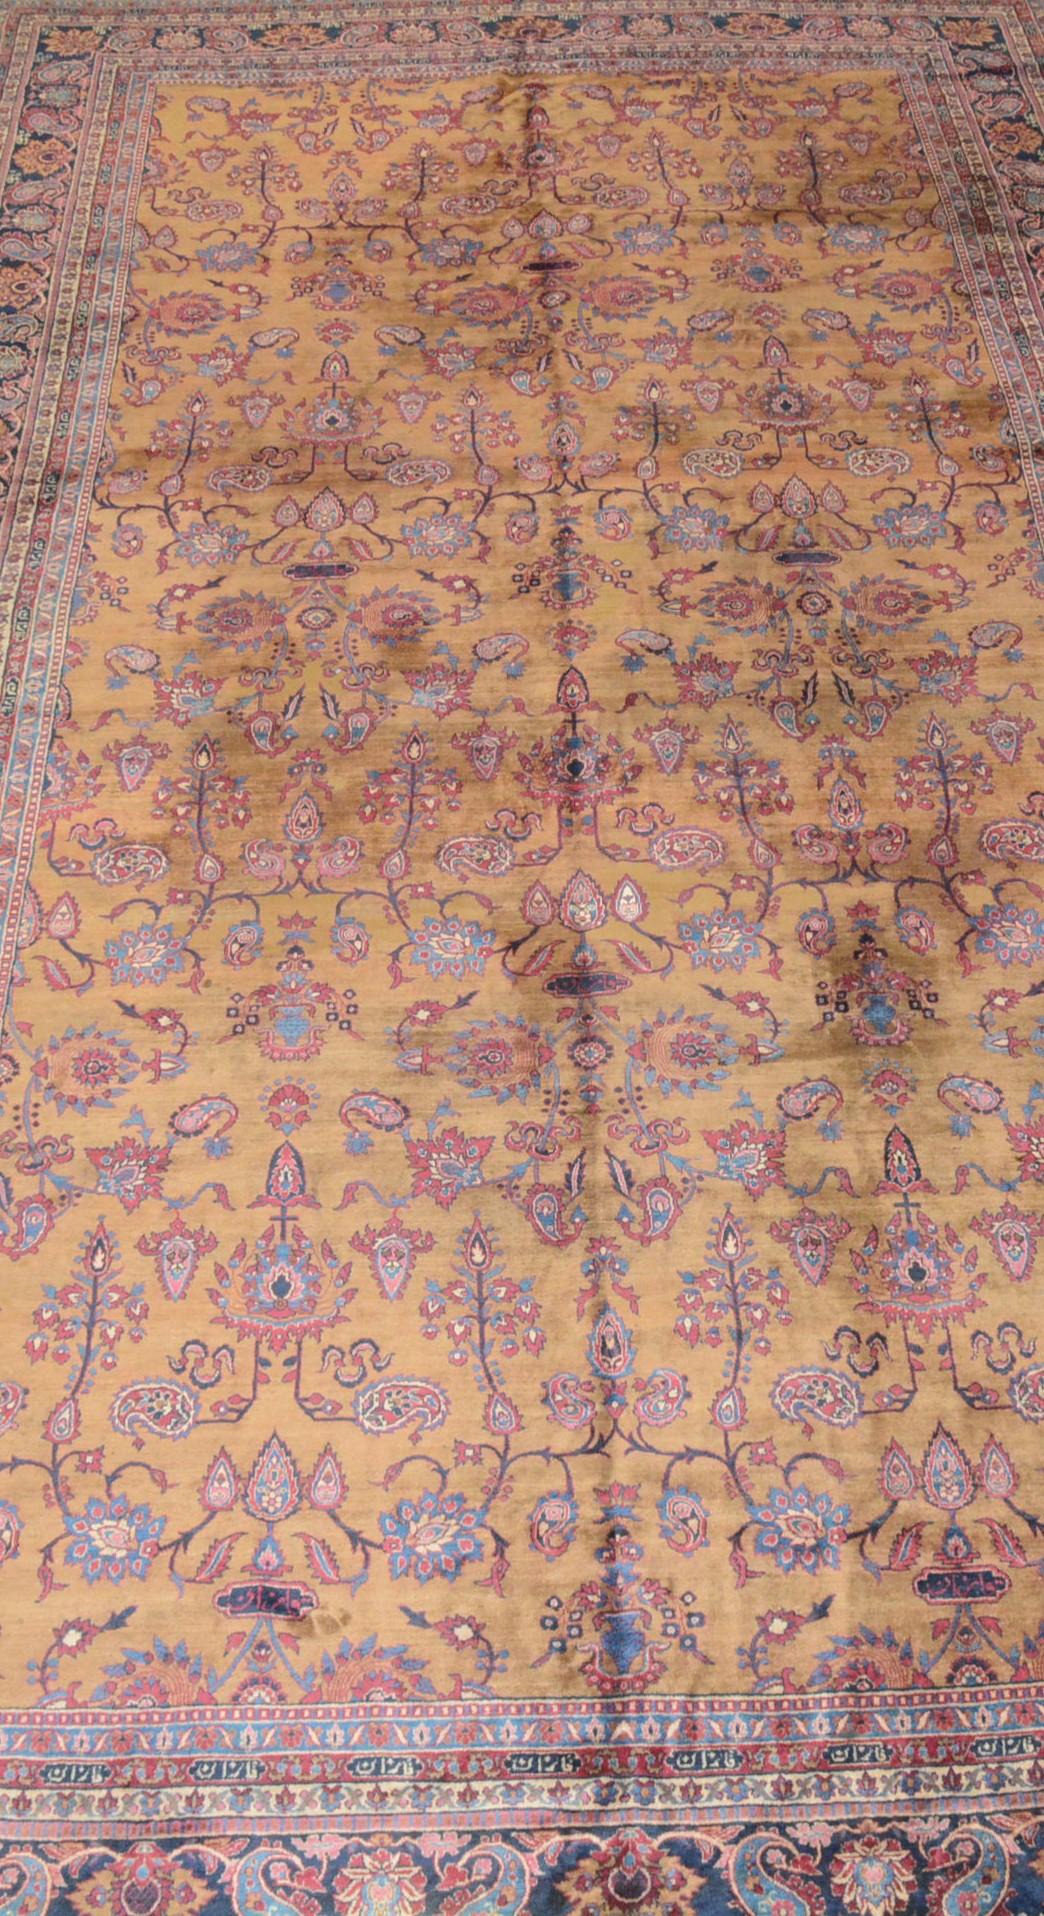 Die Stadt Amritsar in der Region Punjab im Nordwesten Indiens begann im 19. Jahrhundert mit der Herstellung von Teppichen, als Kaschmir von Maharaja Ranjit Singh annektiert wurde. Kaschmir war zu dieser Zeit ein wichtiges Zentrum der Schalweberei.